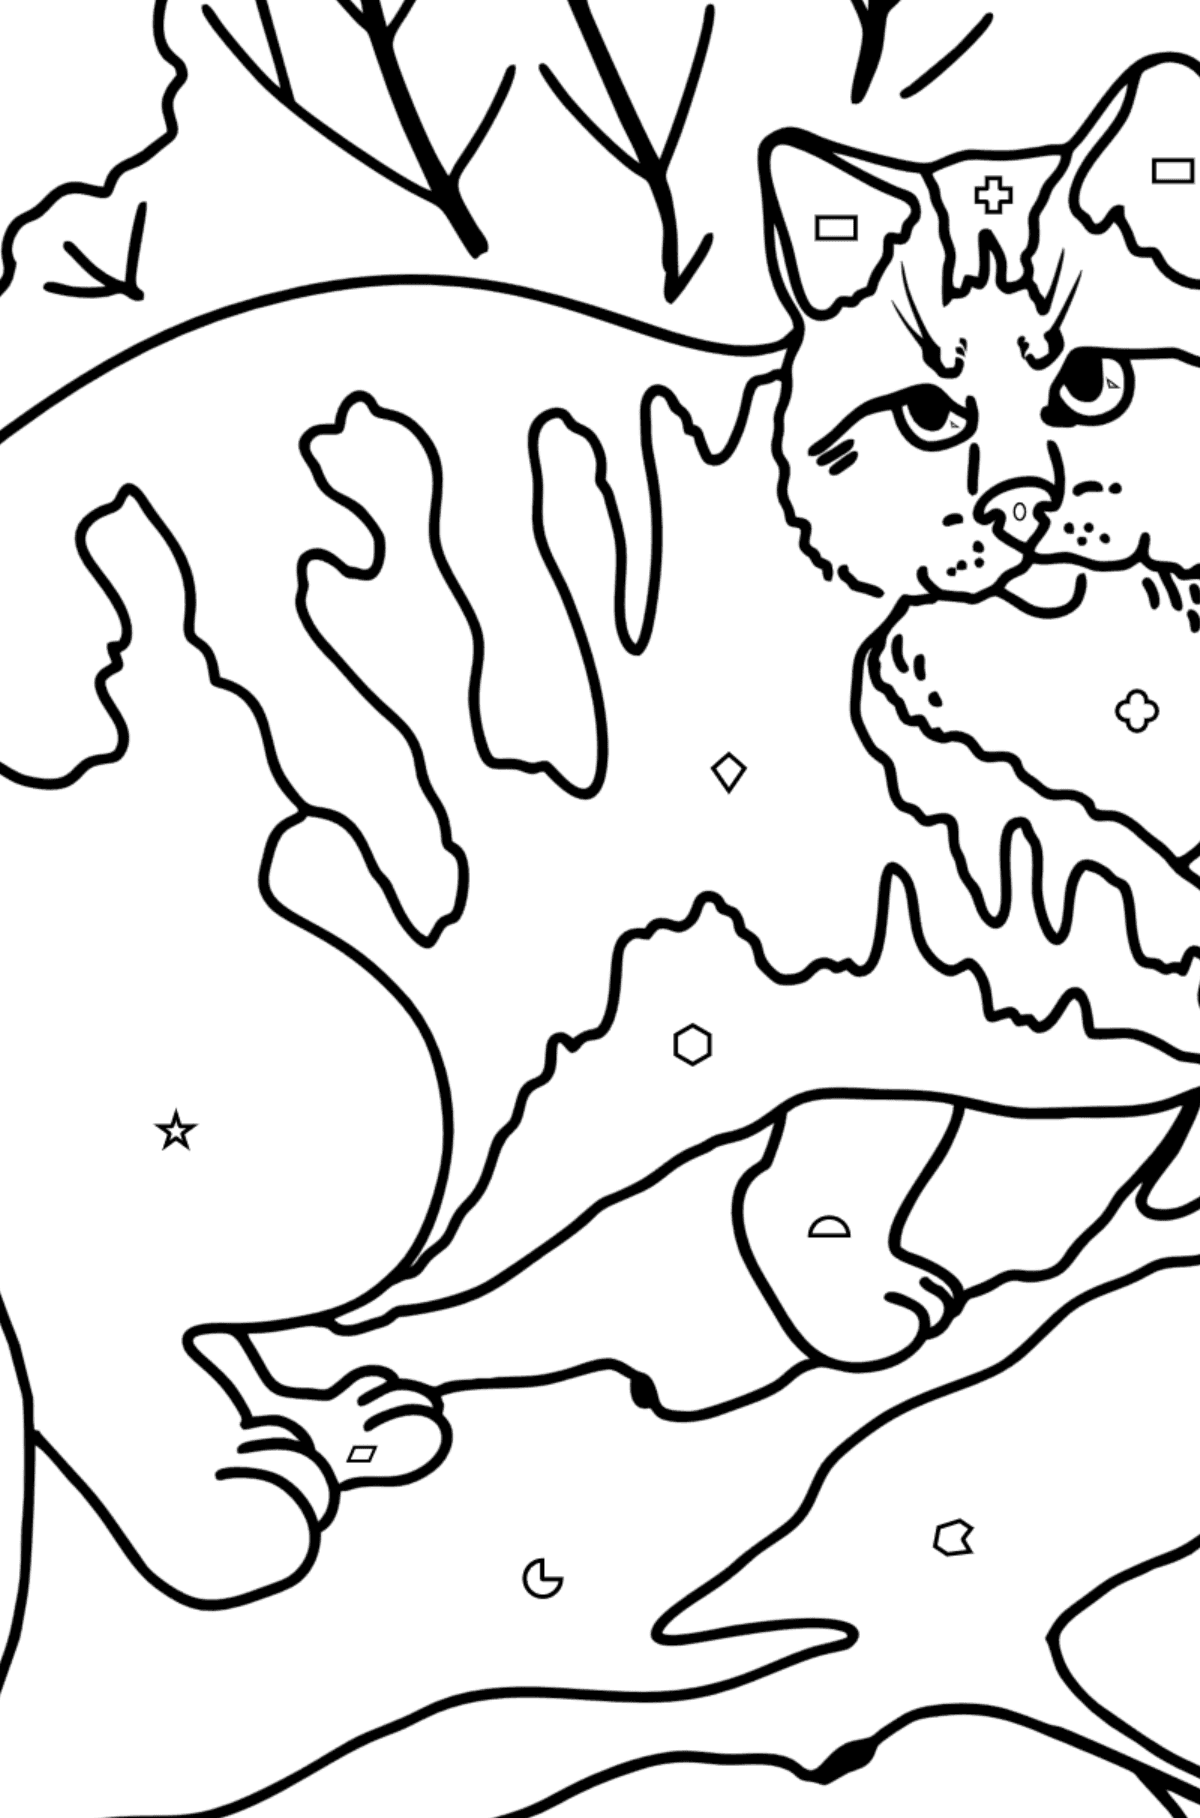 Kolorowanka Kot dzikiego lasu - Kolorowanie według figur geometrycznych dla dzieci